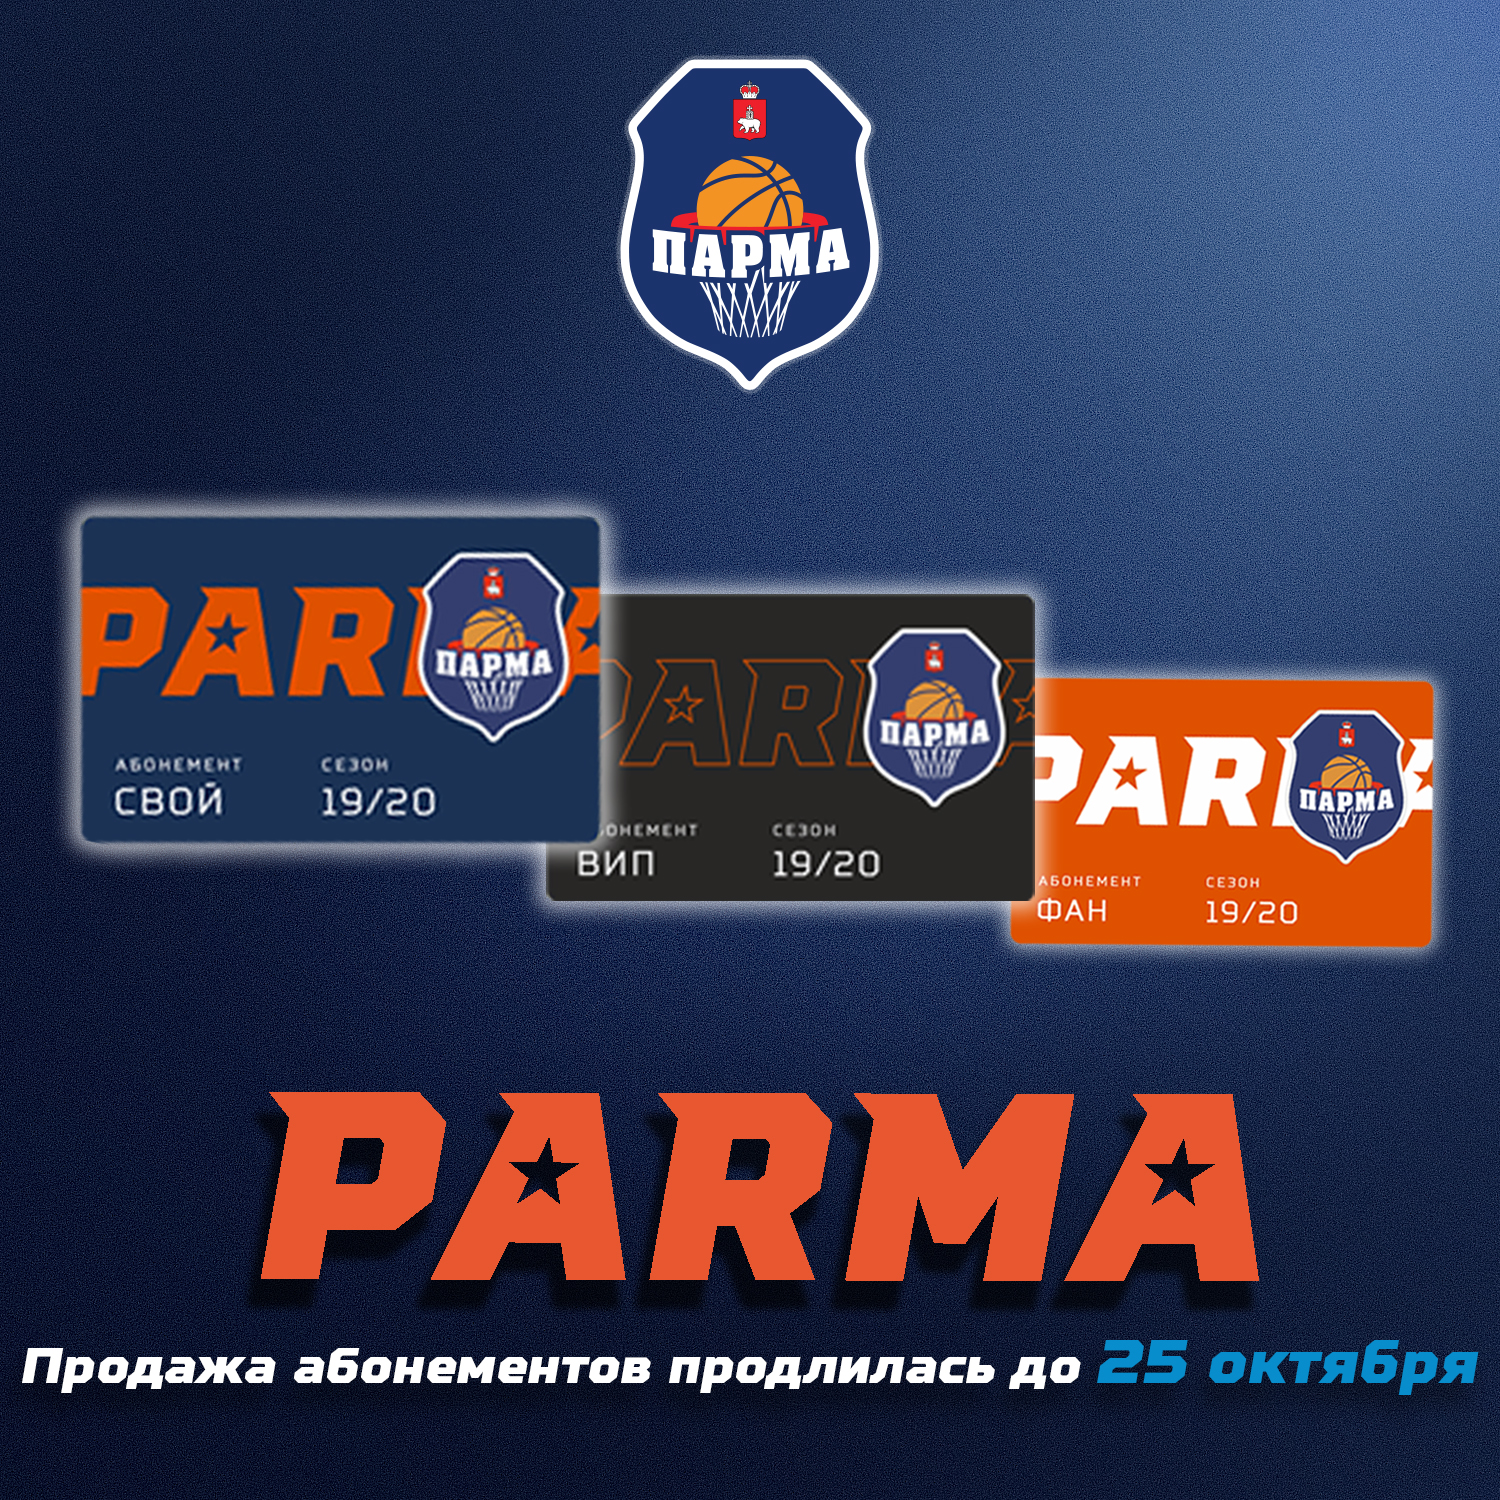 Сайт клуба парма. БК Парма. БК Парма логотип. Парма пари баскетбол. Парма Пермь.